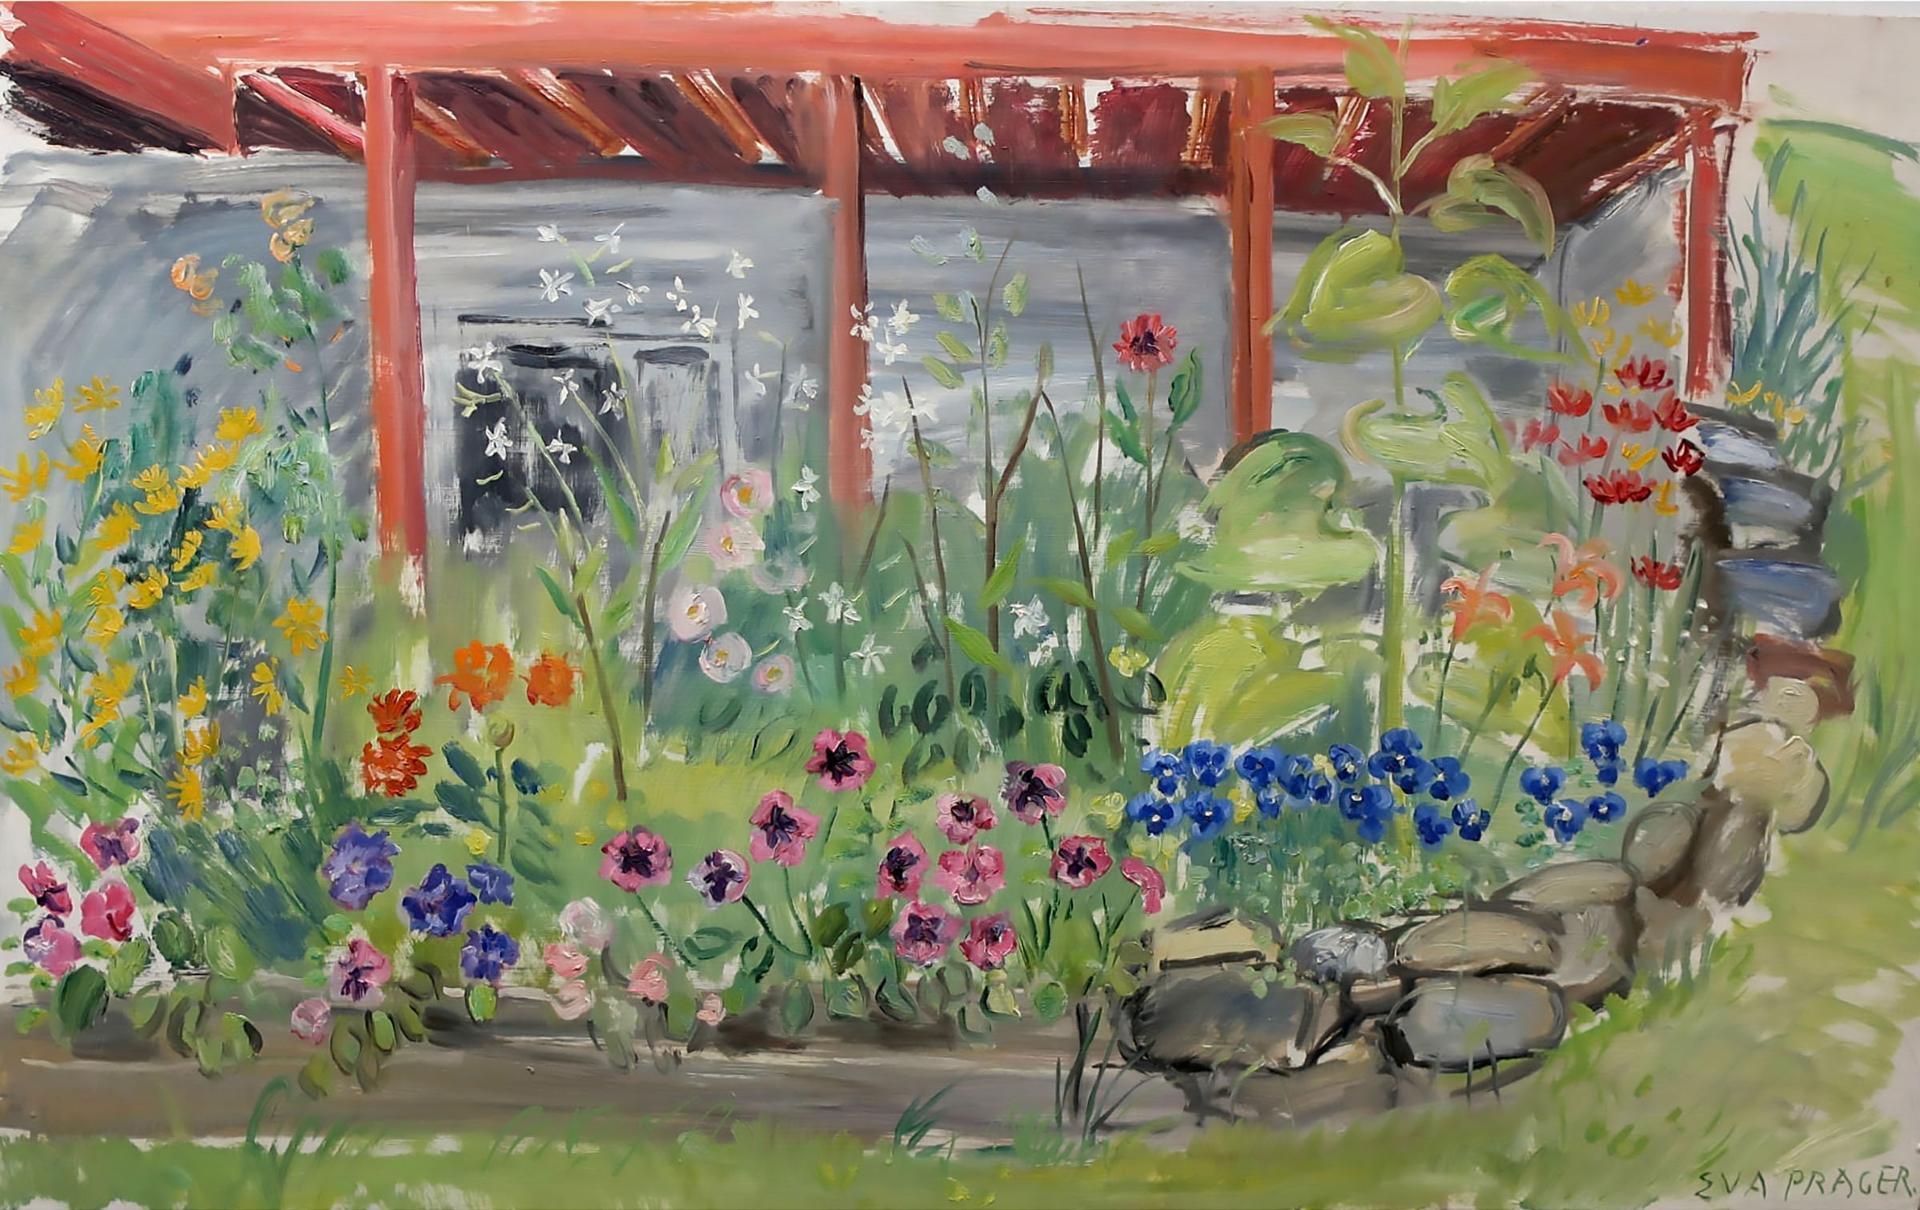 Eva Sophie Prager (1912-2010) - Untitled (The Flower Garden)